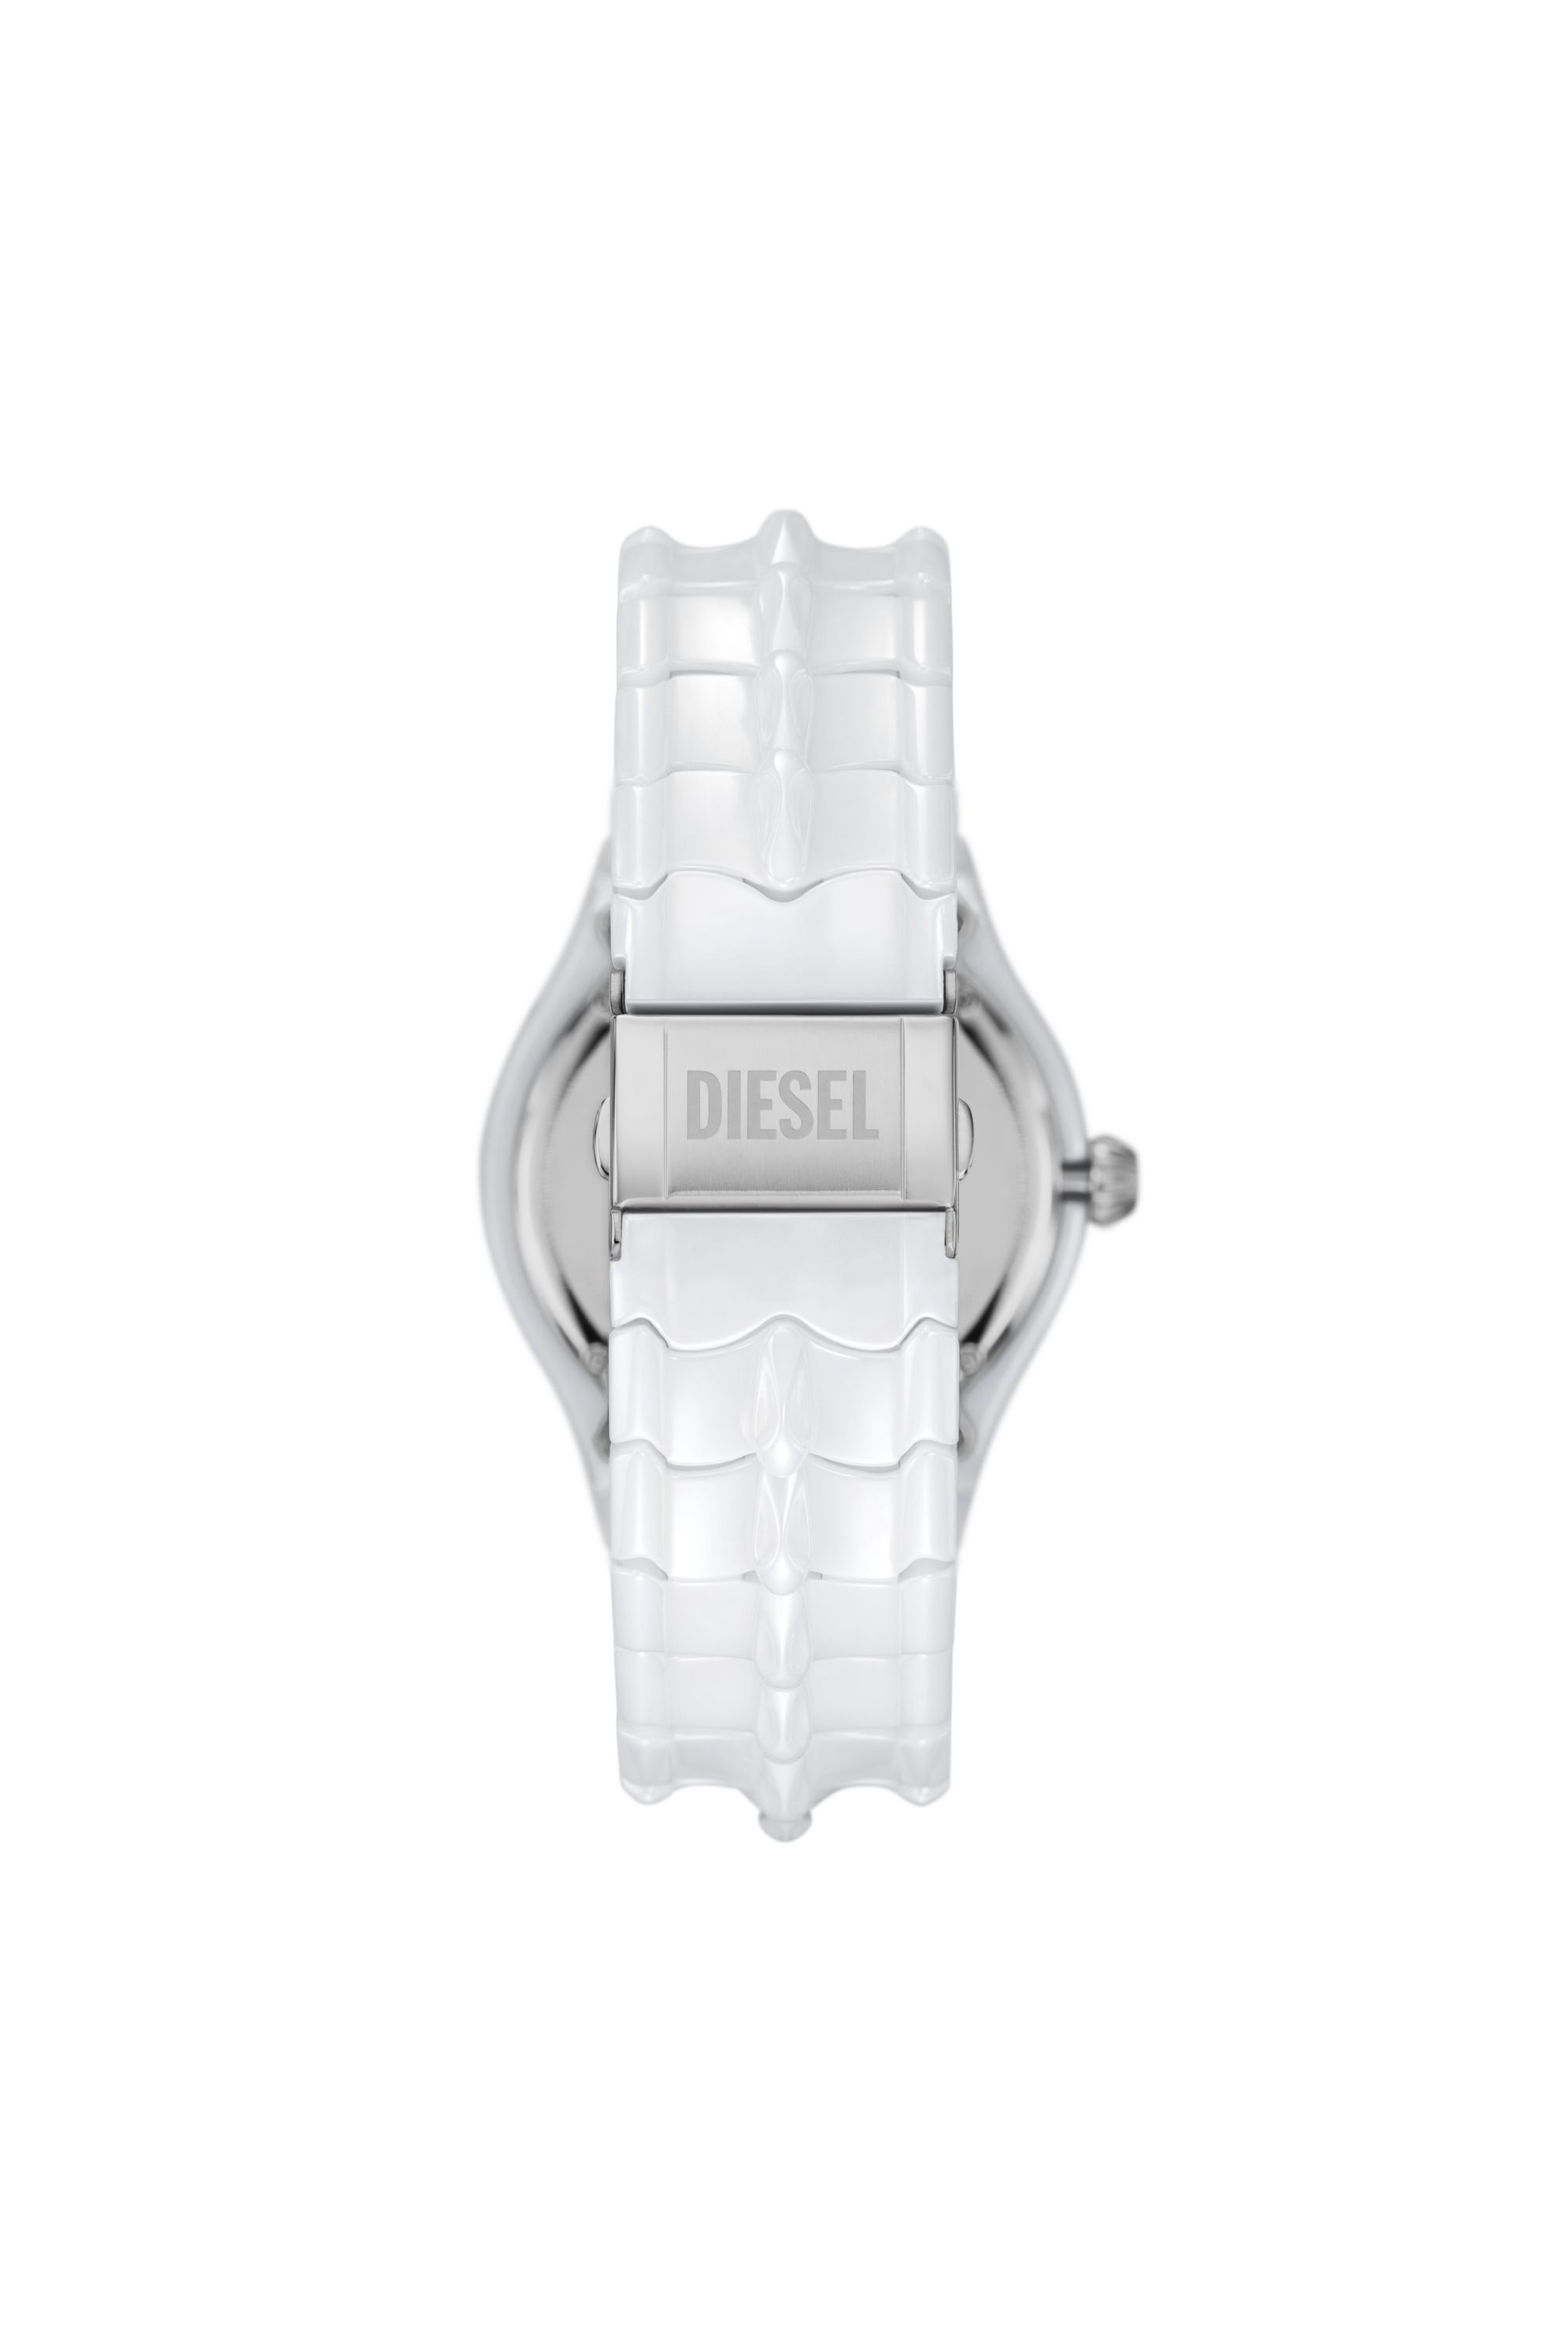 Diesel - DZ2197, Bianco - Image 2